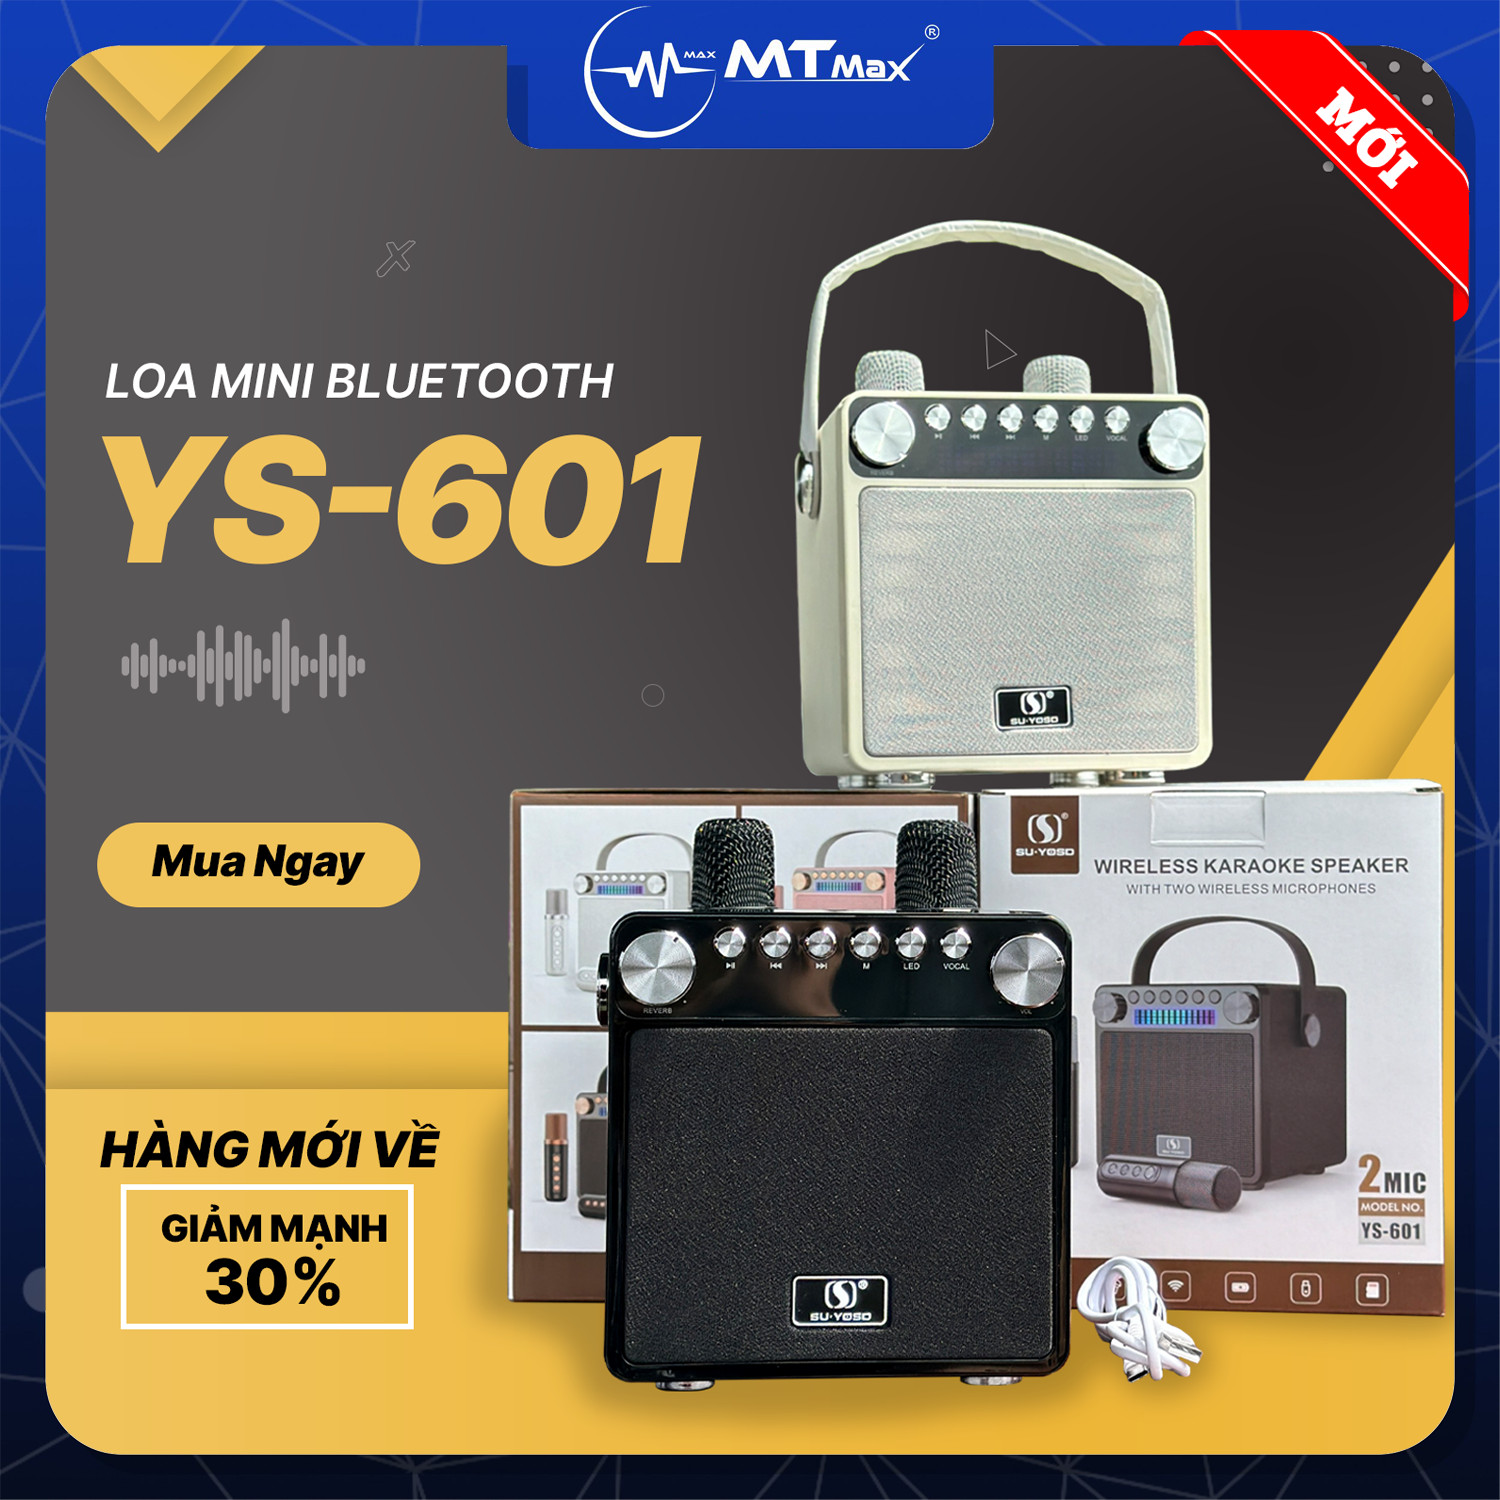 Loa Bluetooth Mini YS-601, Công Suất 35W, Nhỏ Gọn, Âm Thanh Cực Hay, Bass Căng, Đi Kèm 2 Micro Karaoke Thay Đổi Giọng Nói, Bảo Hành 6 Tháng Hàng Chính Hãng